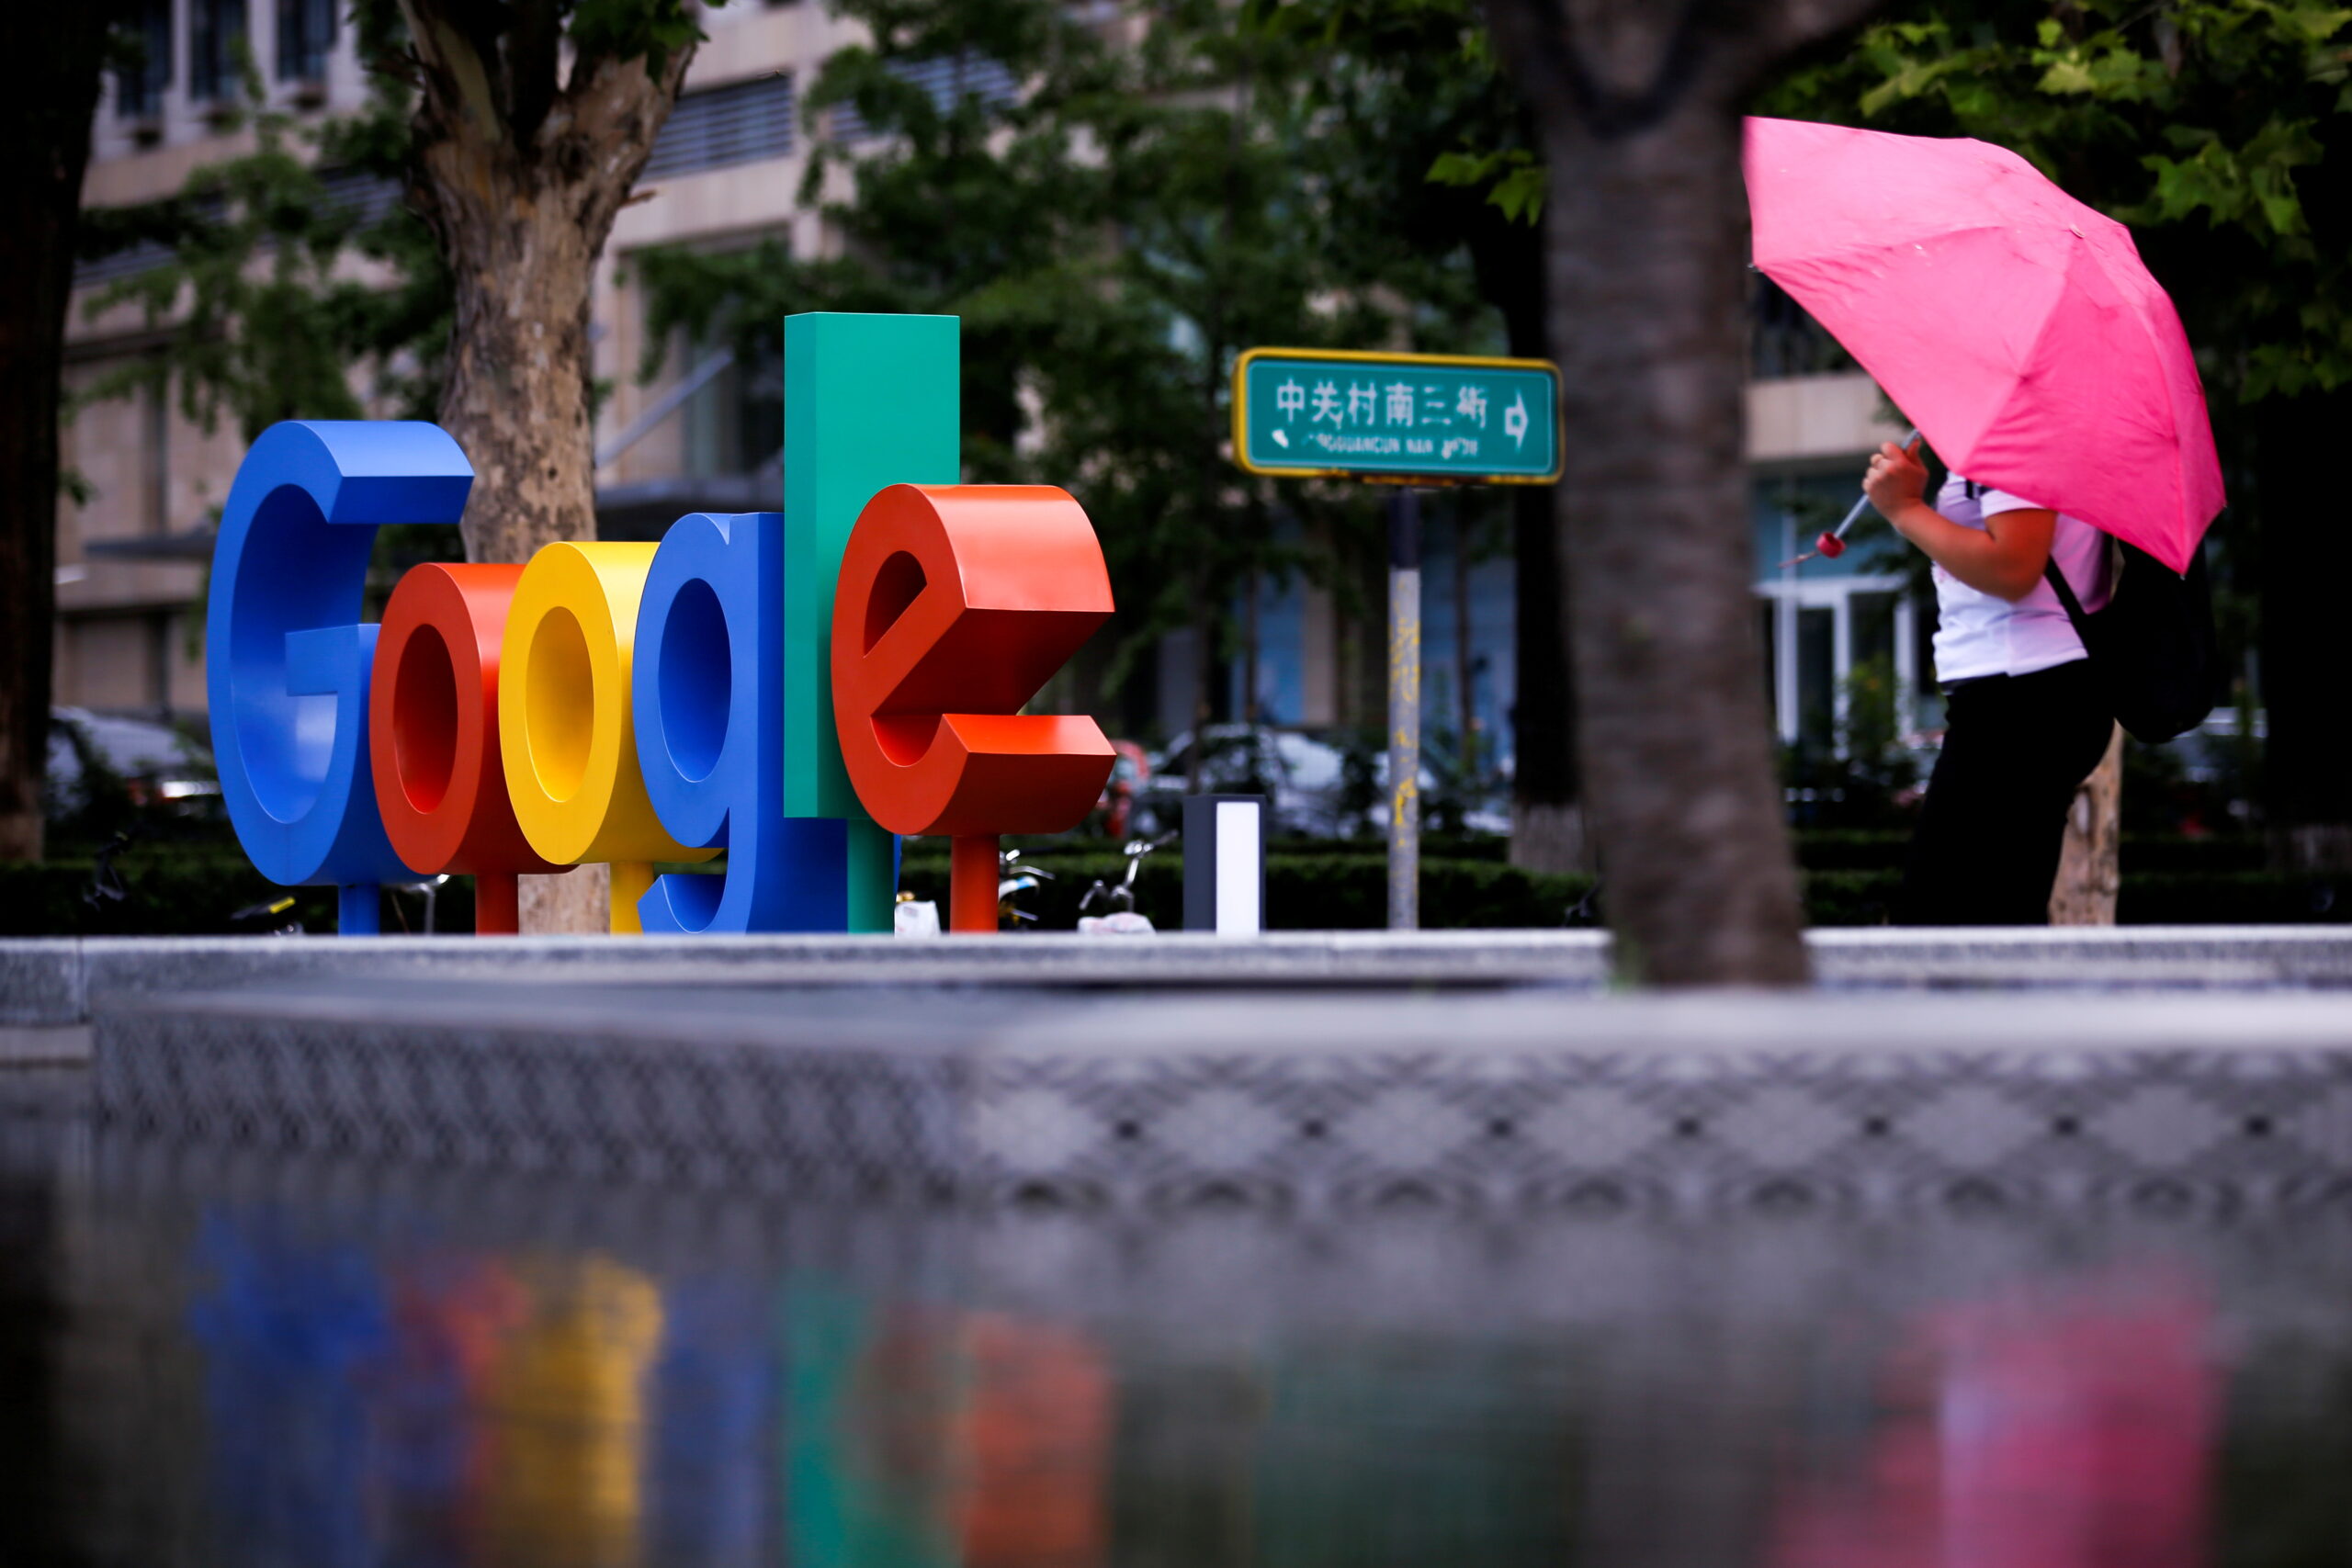  Google parent Alphabet reaches record quarterly revenue, profit in ad boom